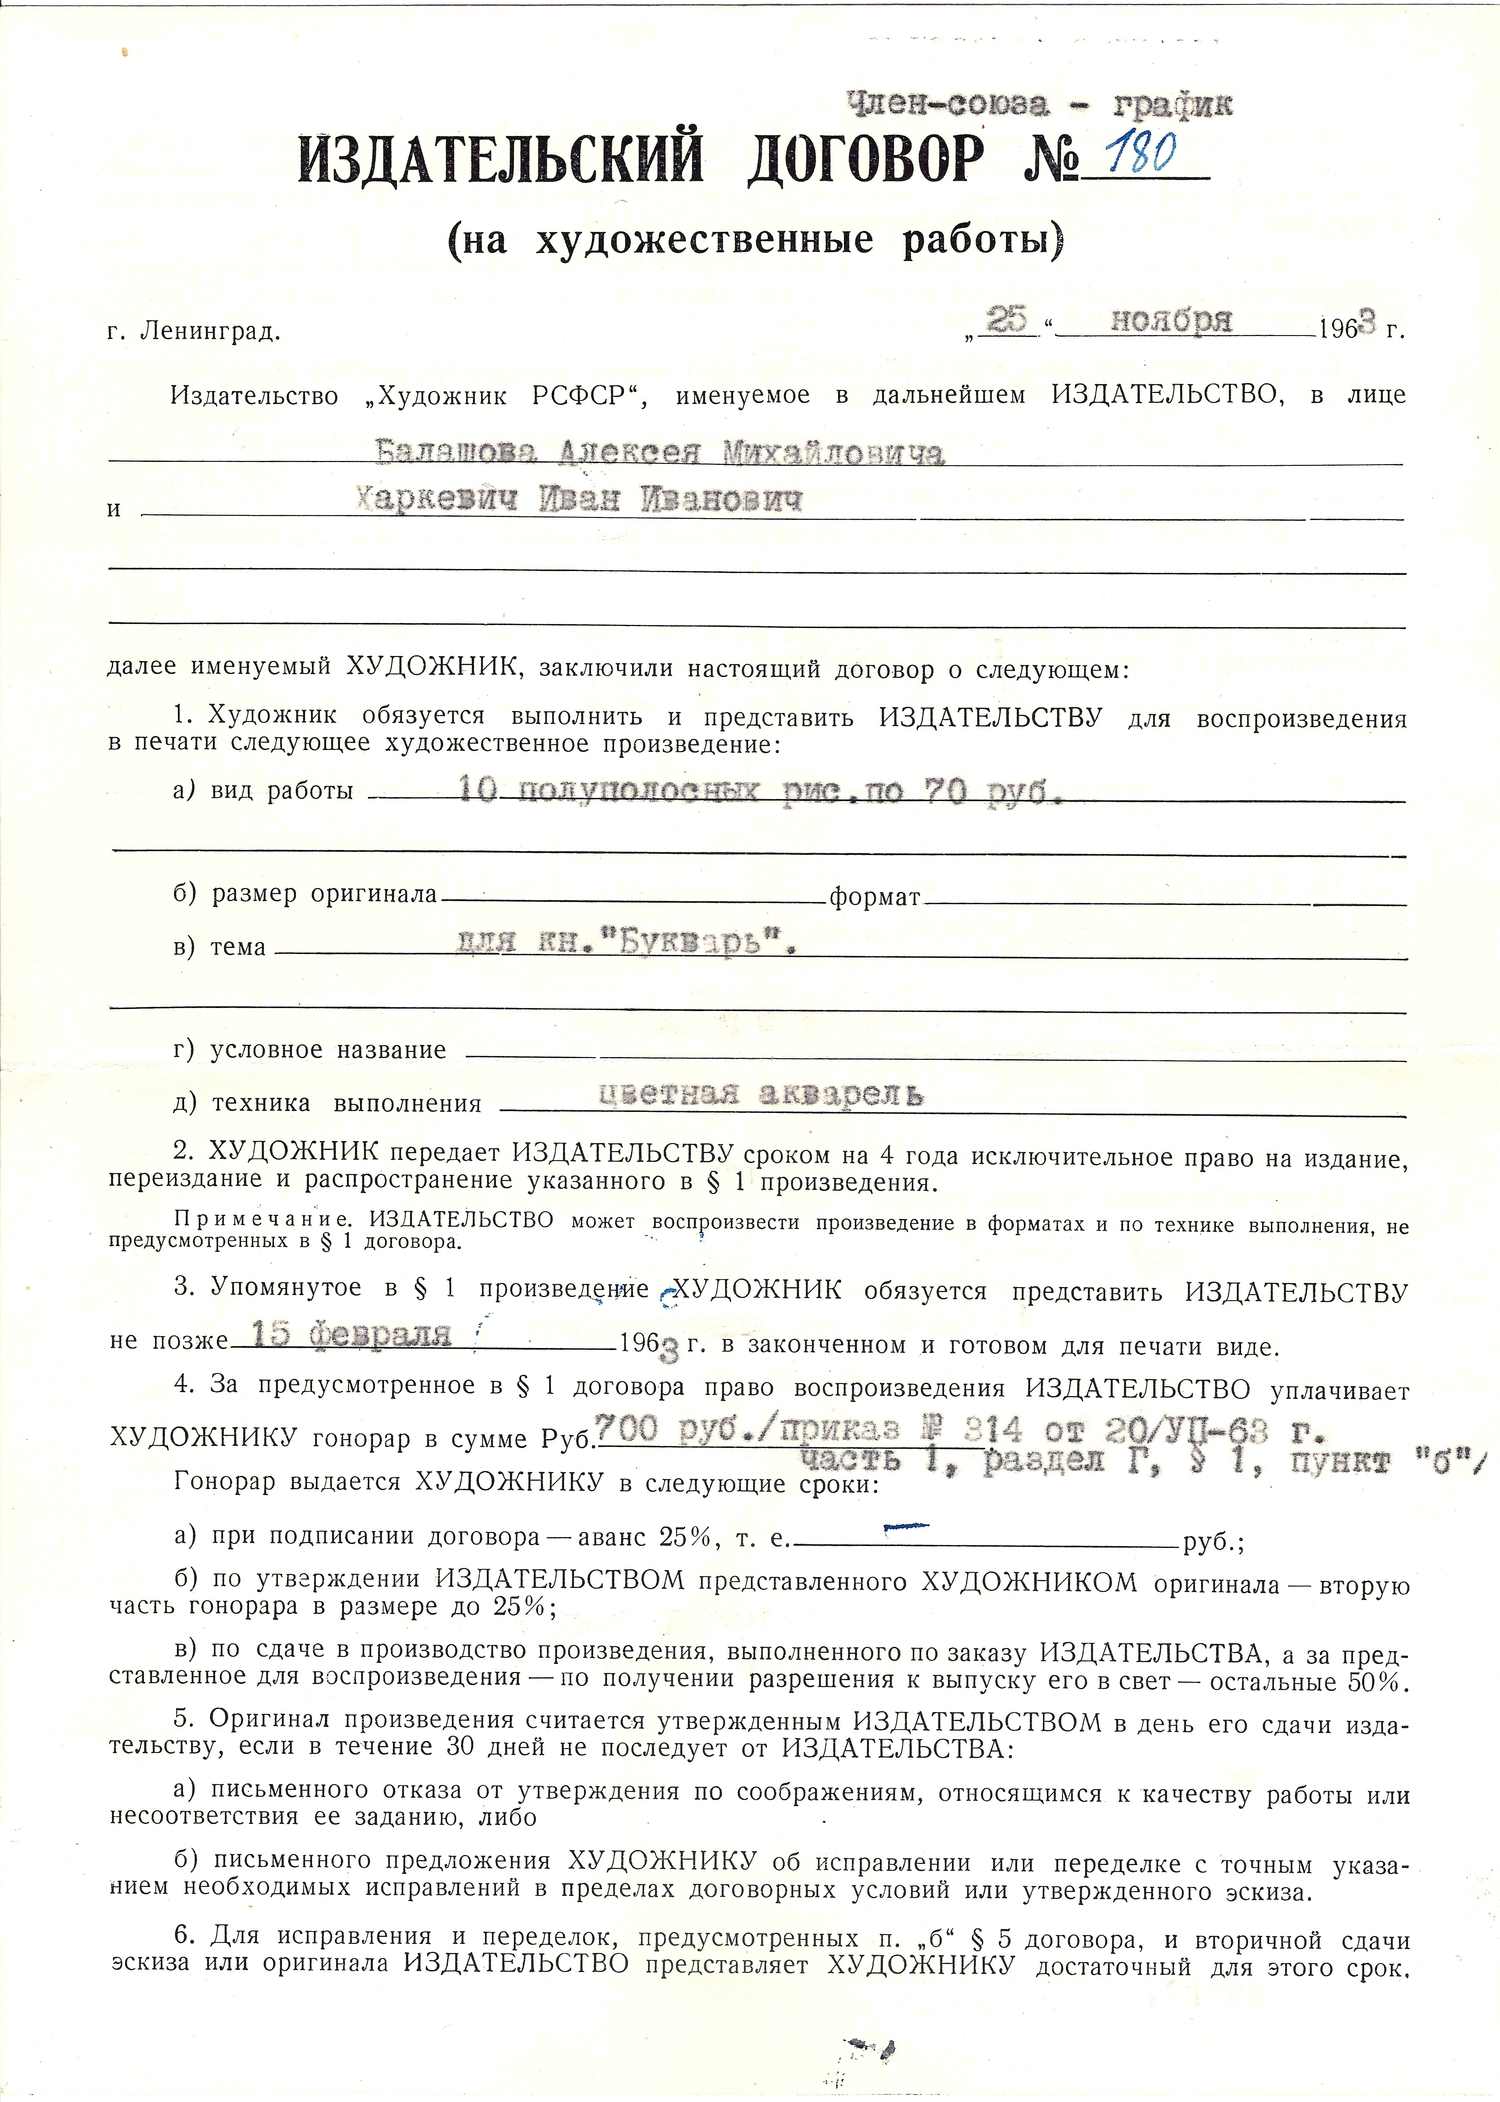 Документы из архива художника И.И. Харкевича, касающиеся подготовки иллюстраций к изданию «Букваря». 1963.